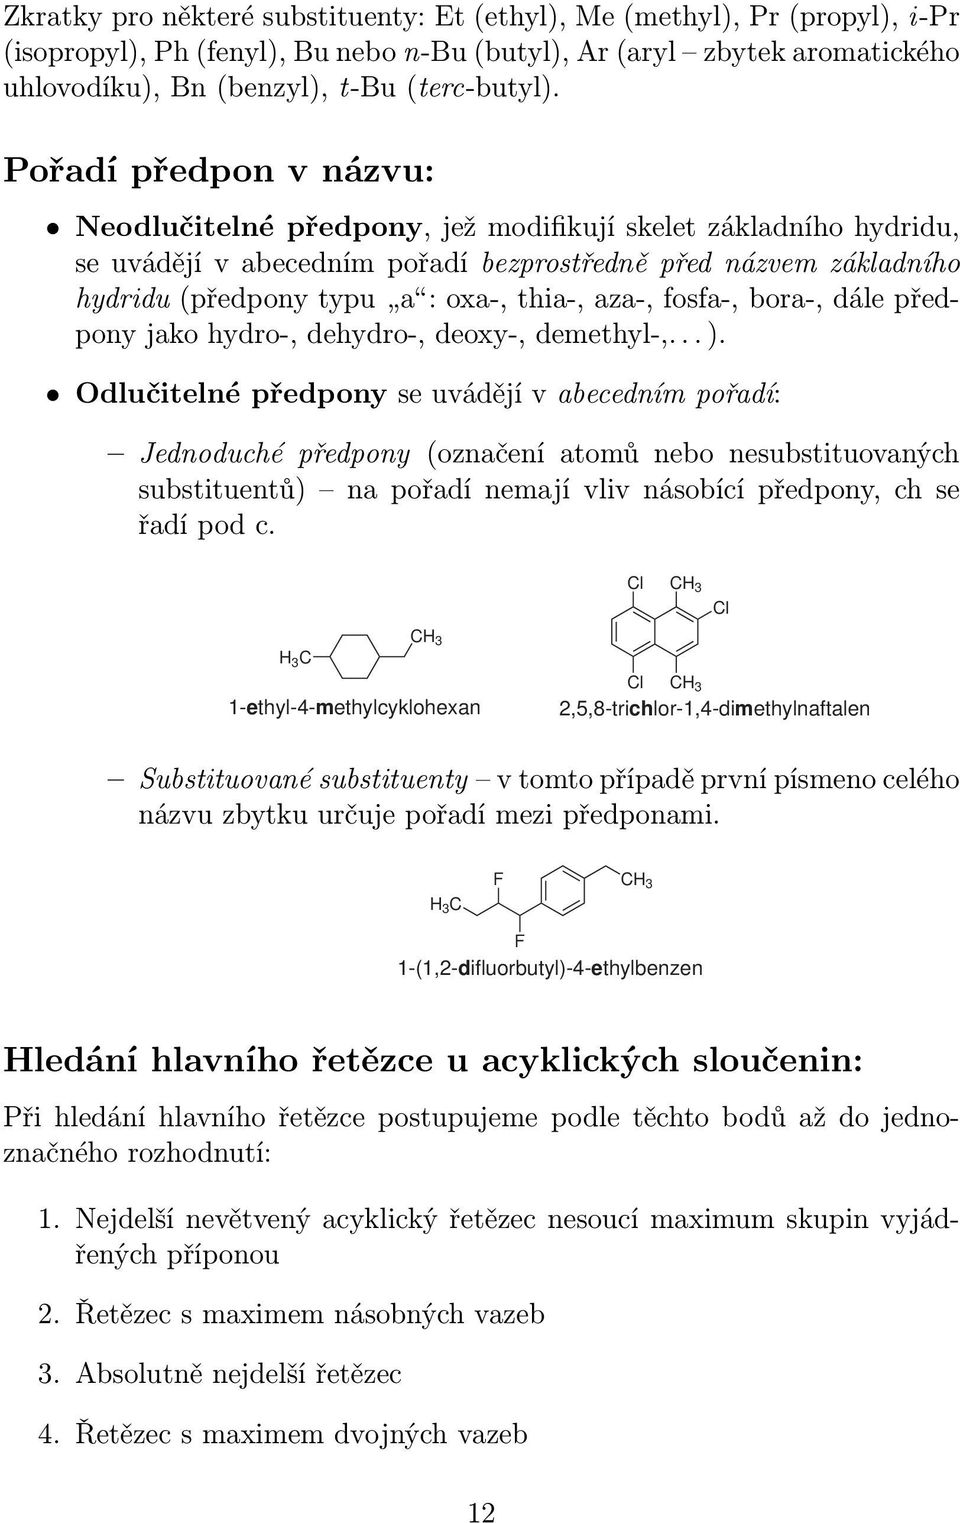 aza-, fosfa-, bora-, dále předpony jako hydro-, dehydro-, deoxy-, demethyl-,... ).